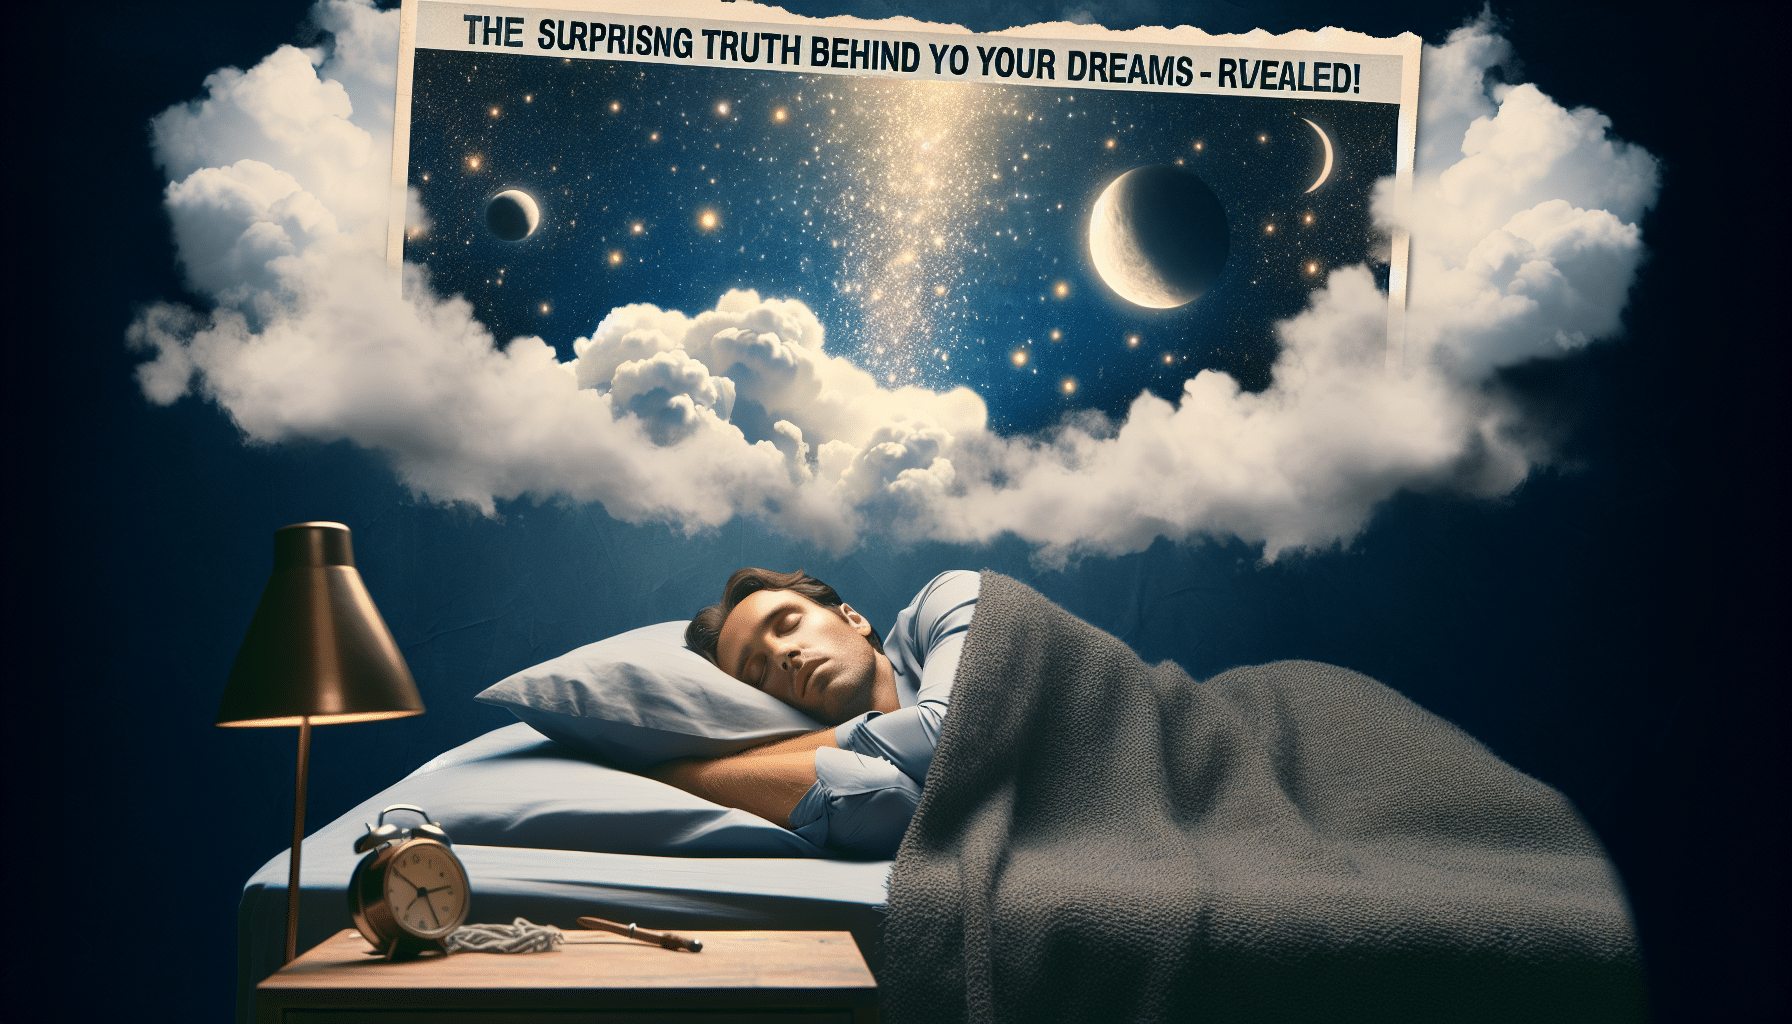 découvrez les croyances populaires sur les rêves dans cet article fascinant sur le phénomène du rêve.